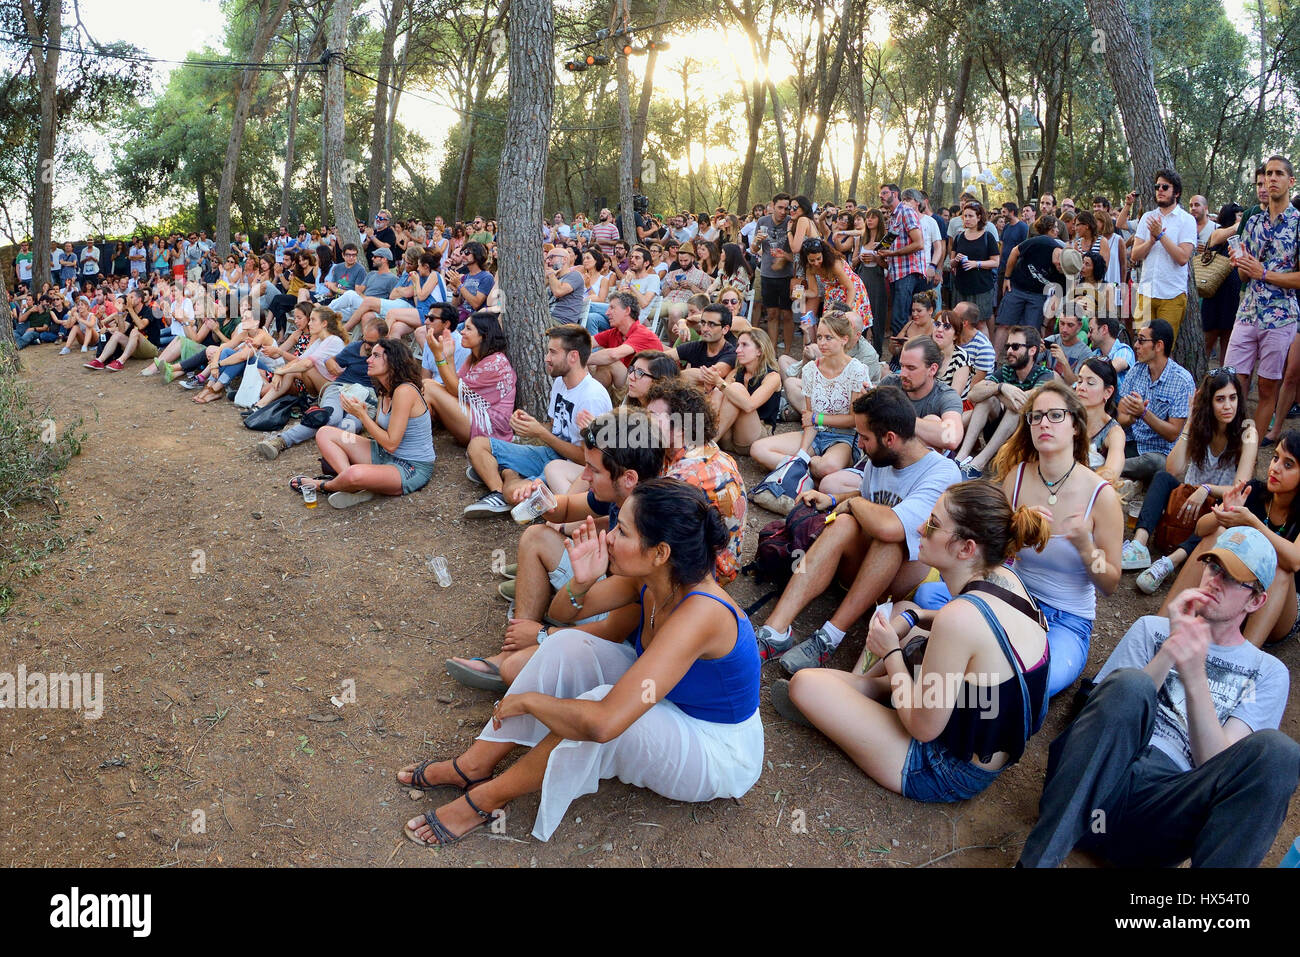 Barcelone - Jul 3 : Les gens de l'auditoire regarder un concert au Festival de Vida le 3 juillet 2015 à Barcelone, Espagne. Banque D'Images